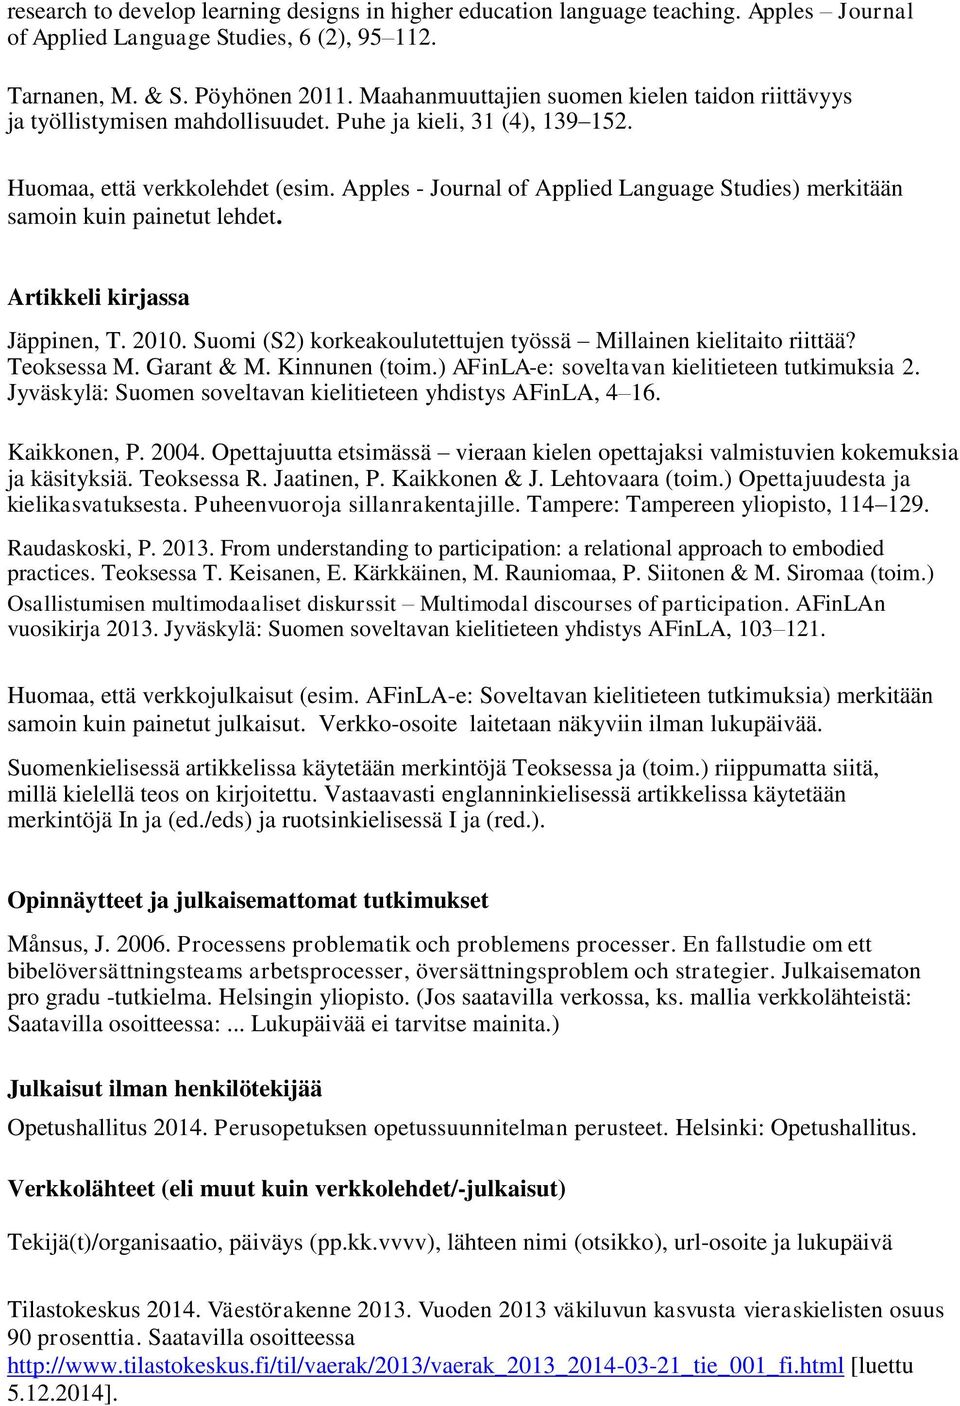 Apples - Journal of Applied Language Studies) merkitään samoin kuin painetut lehdet. Artikkeli kirjassa Jäppinen, T. 2010. Suomi (S2) korkeakoulutettujen työssä Millainen kielitaito riittää?